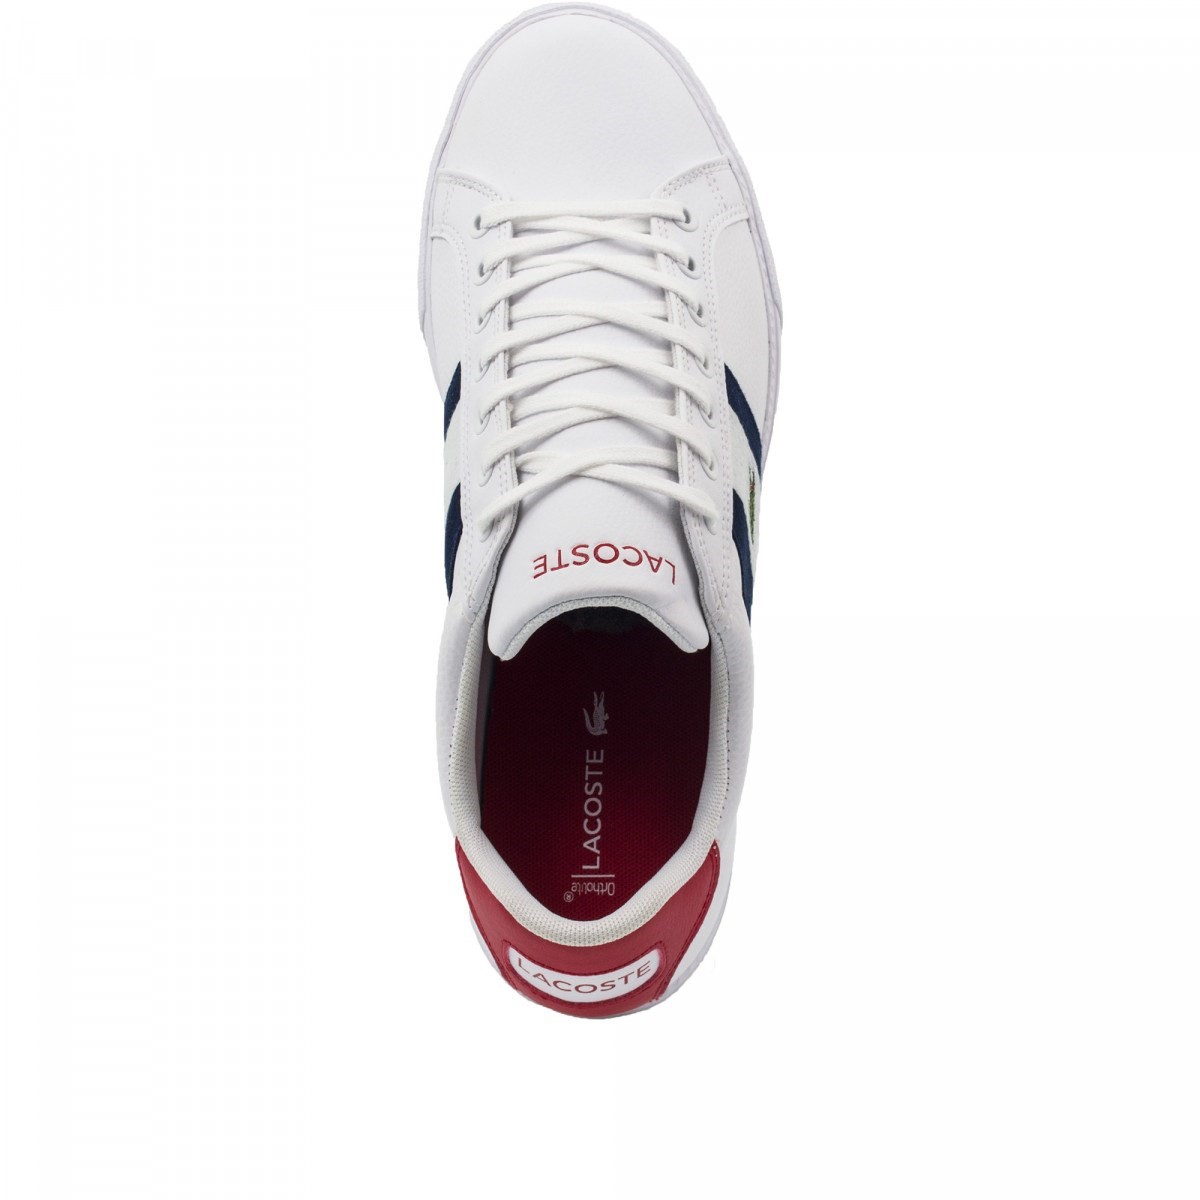 Lacoste Erkek Ayakkabı 739SMA0084 Beyaz / Lacivert / Kırmızı